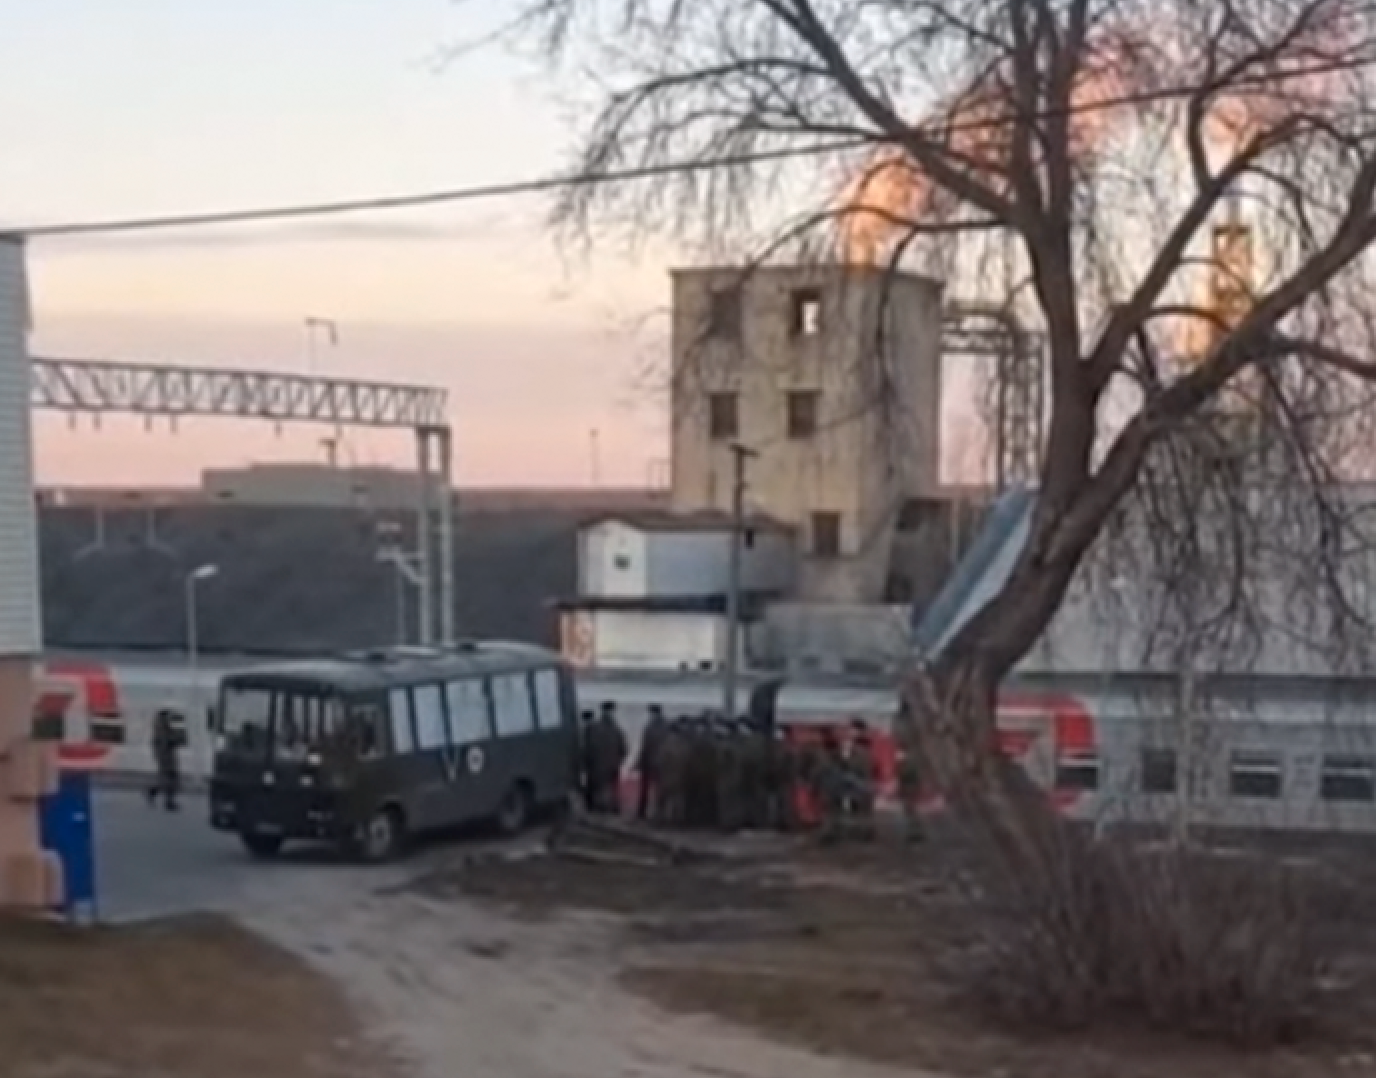 På bilder och filmer som sprids i sociala medier syns ryska soldater lasta något från ambulansbussar med täckta rutor till tågvagnar. Enligt vittnen är det döda och skadade soldater som i hemlighet förs bort.  